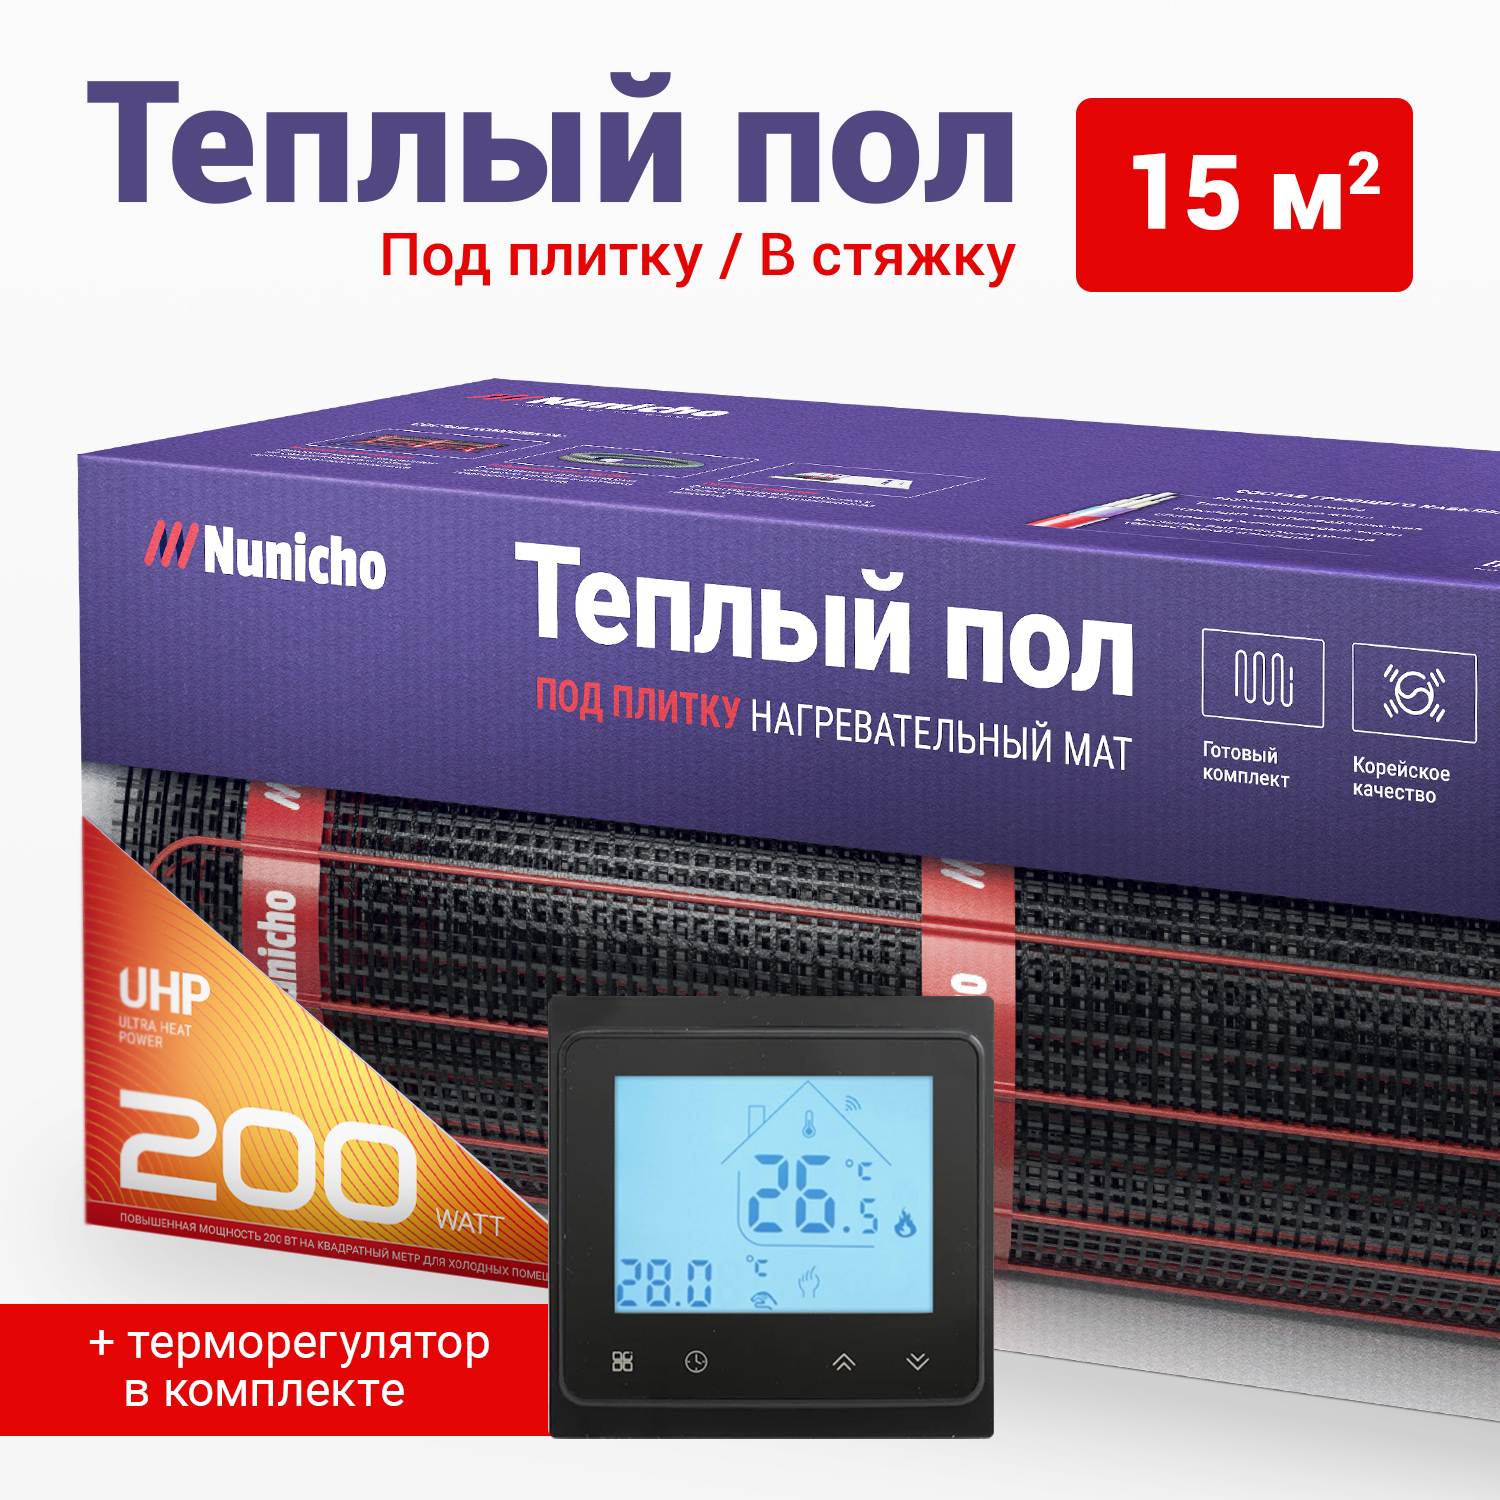 фото Теплый пол под плитку в стяжку nunicho 15 м2, 200 вт/м2 со smart-терморегулятором черным